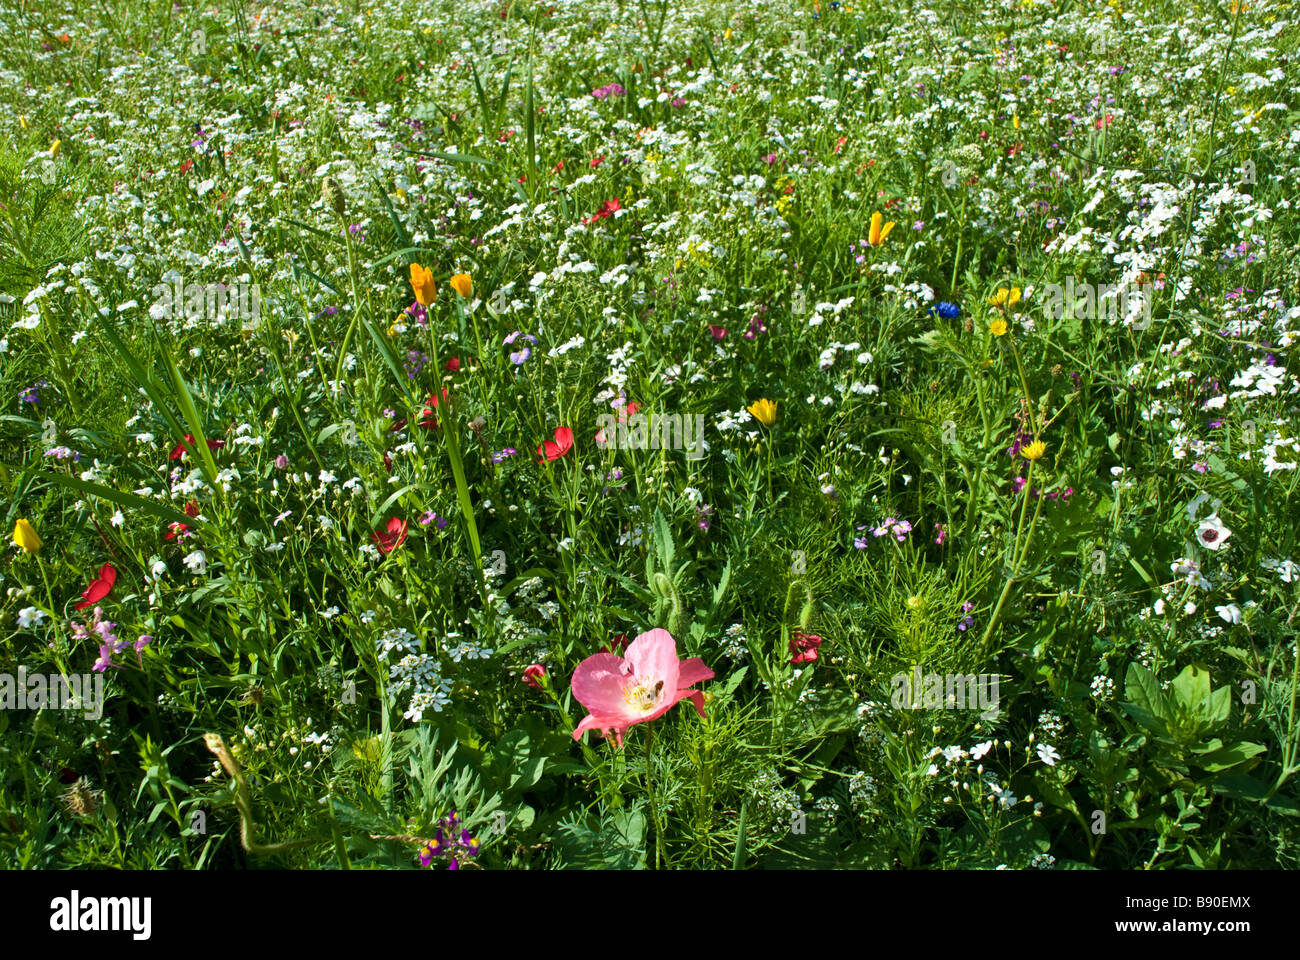 Prato con fiori colorati come cornflowers ed erbe | Wiese mit farbenfrohen Blumen und Kräutern Foto Stock